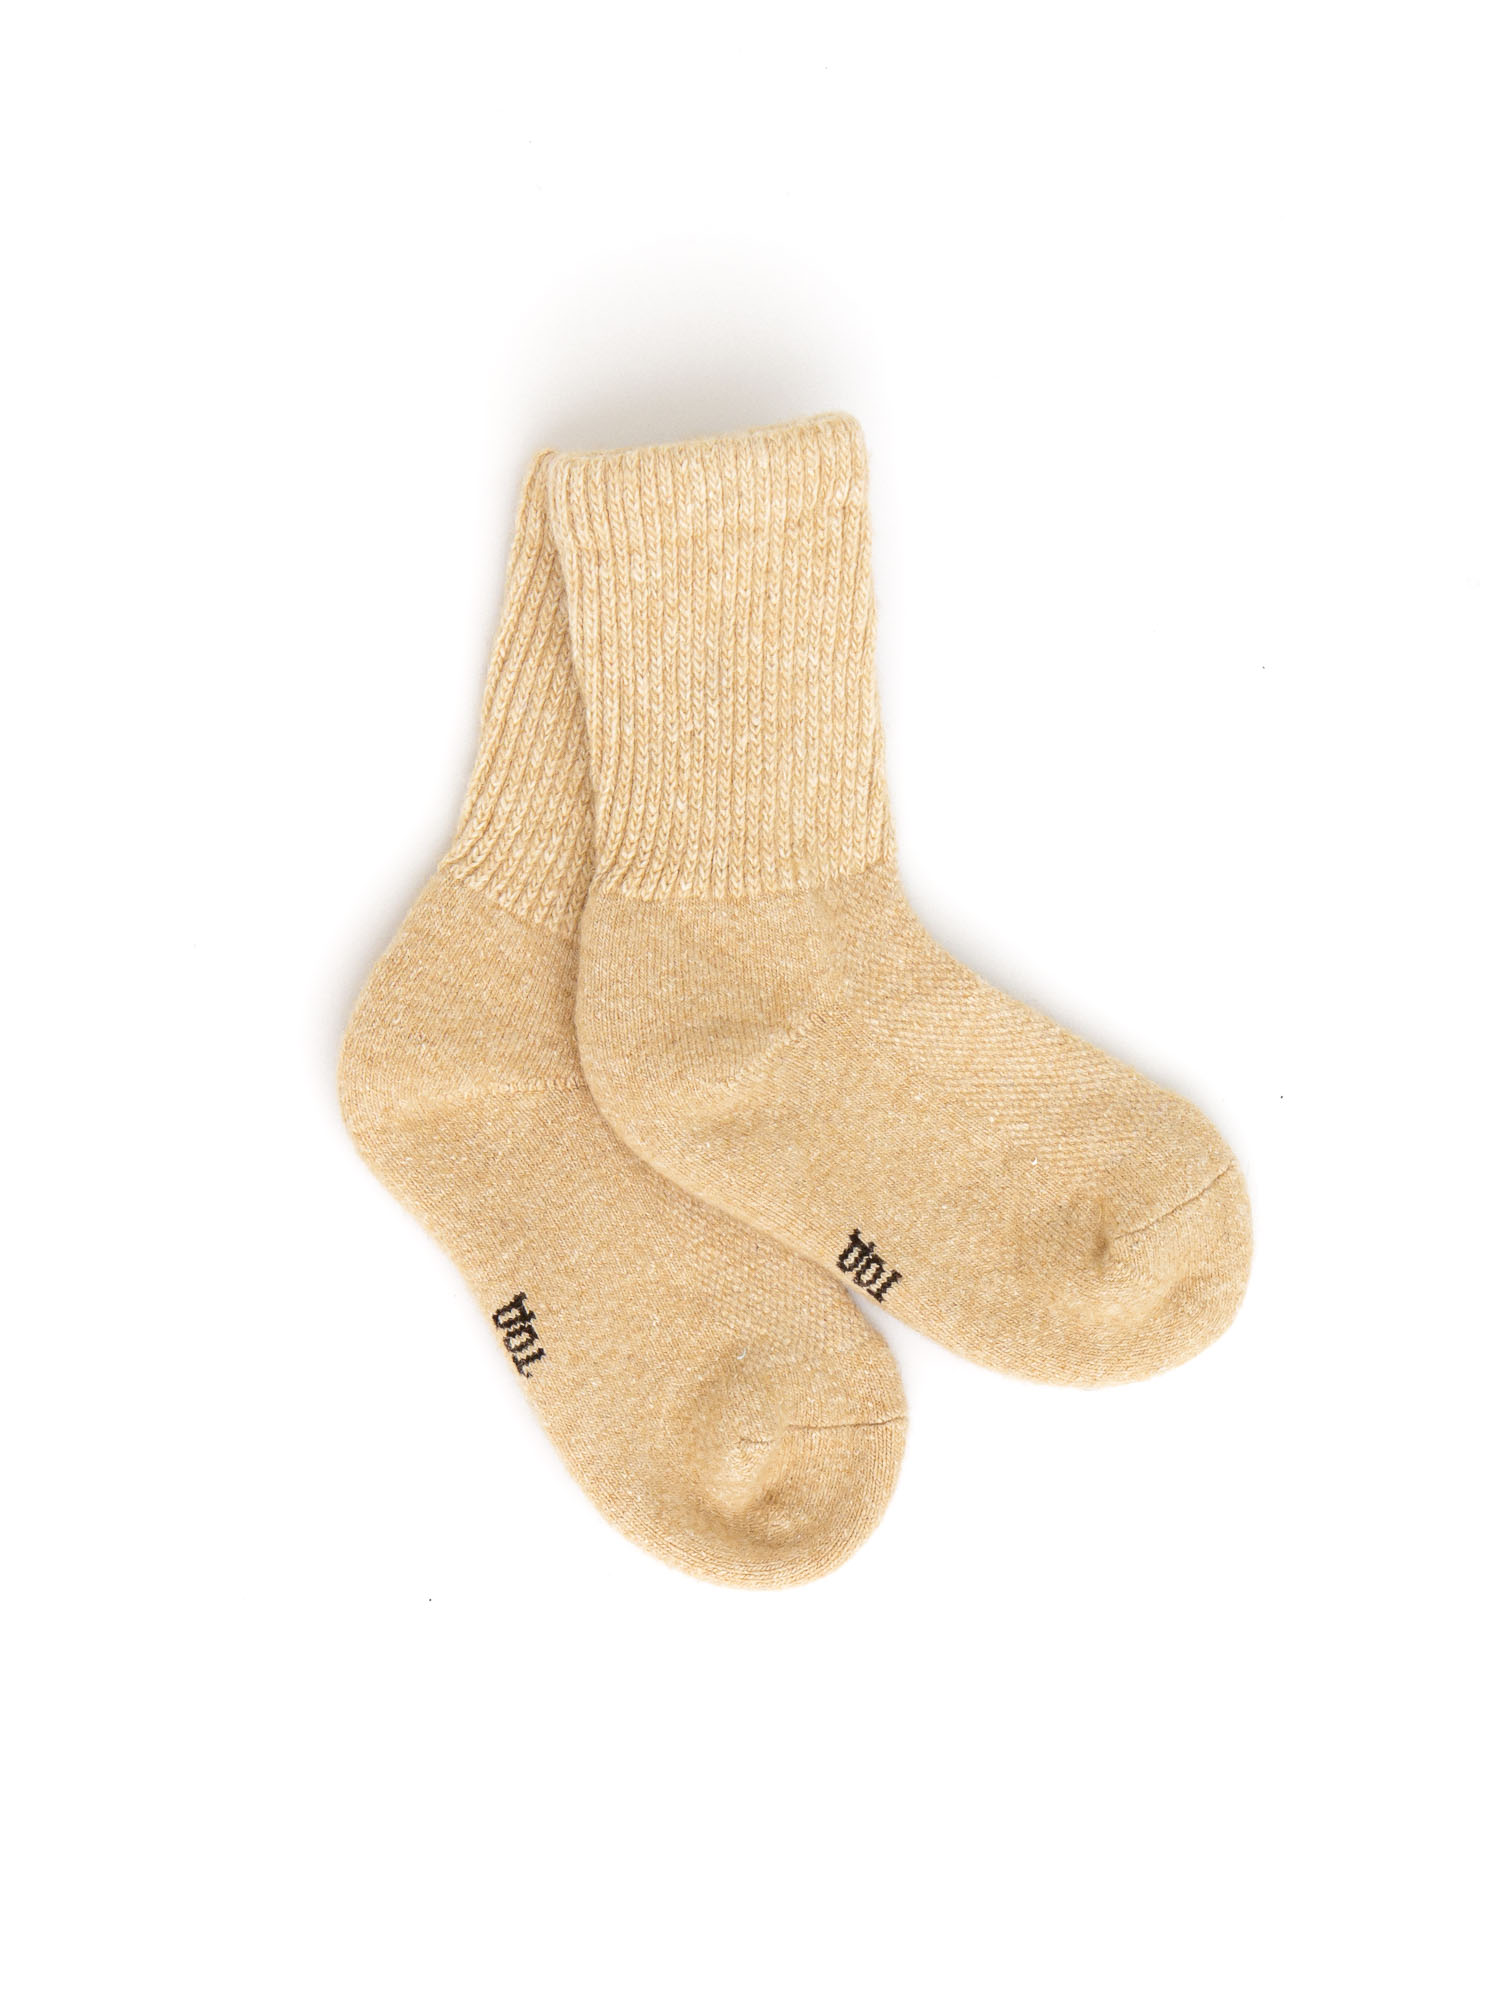 Детские носки из монгольской шерсти бежевые 2 (12-14 см) ТОД ОЙМС ХХК, цвет бежевый, размер 2 (12-14 см) Детские носки из монгольской шерсти бежевые 2 (12-14 см) - фото 1